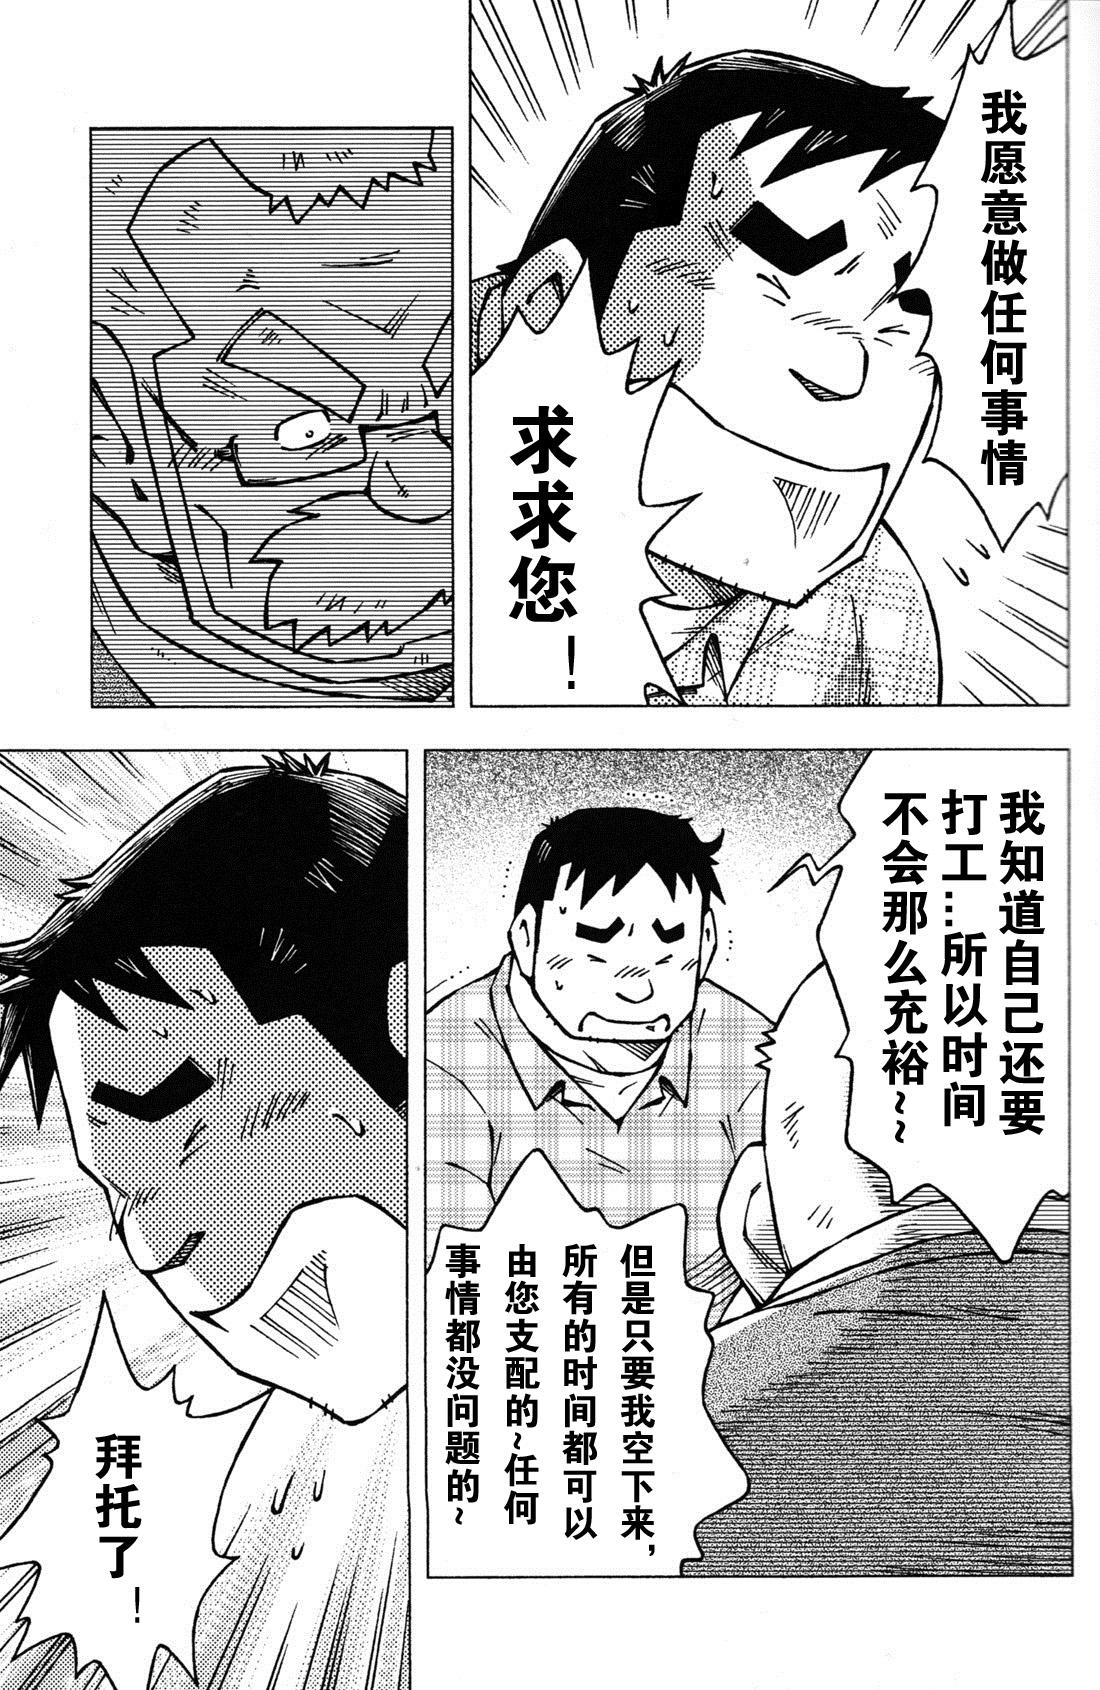 Mas Sensei no Tokoro e Secretary - Page 7